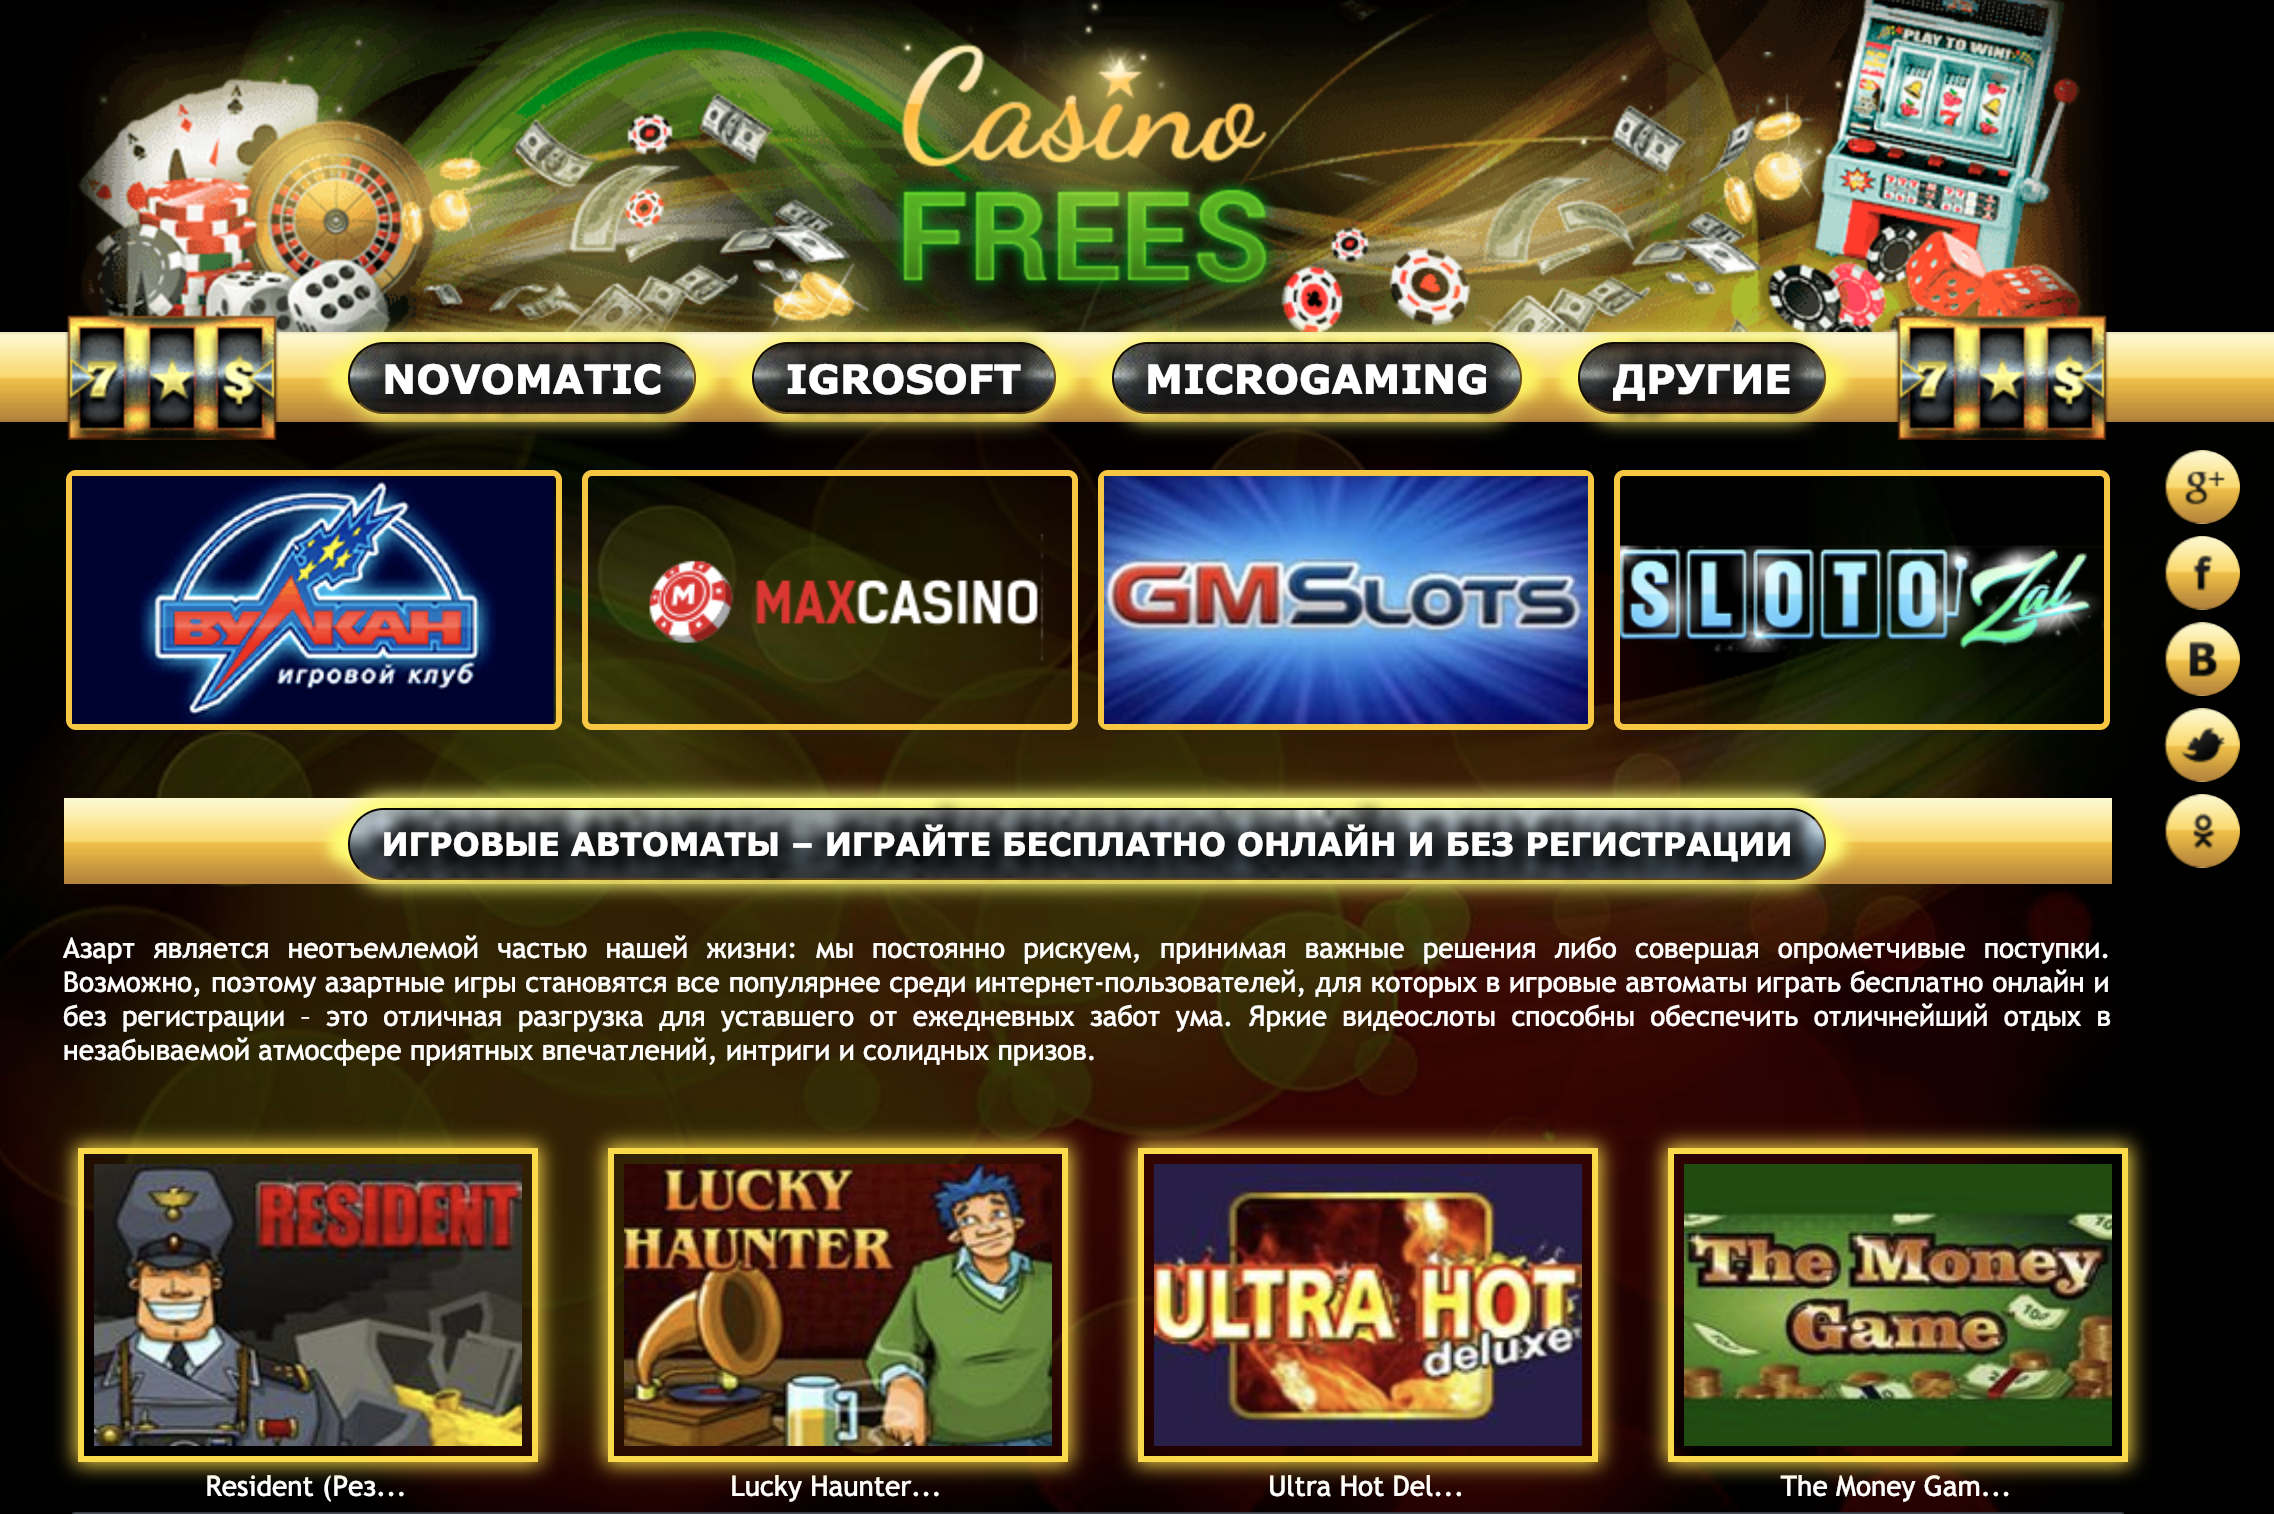 Бесплатные симуляторы в онлайн казино